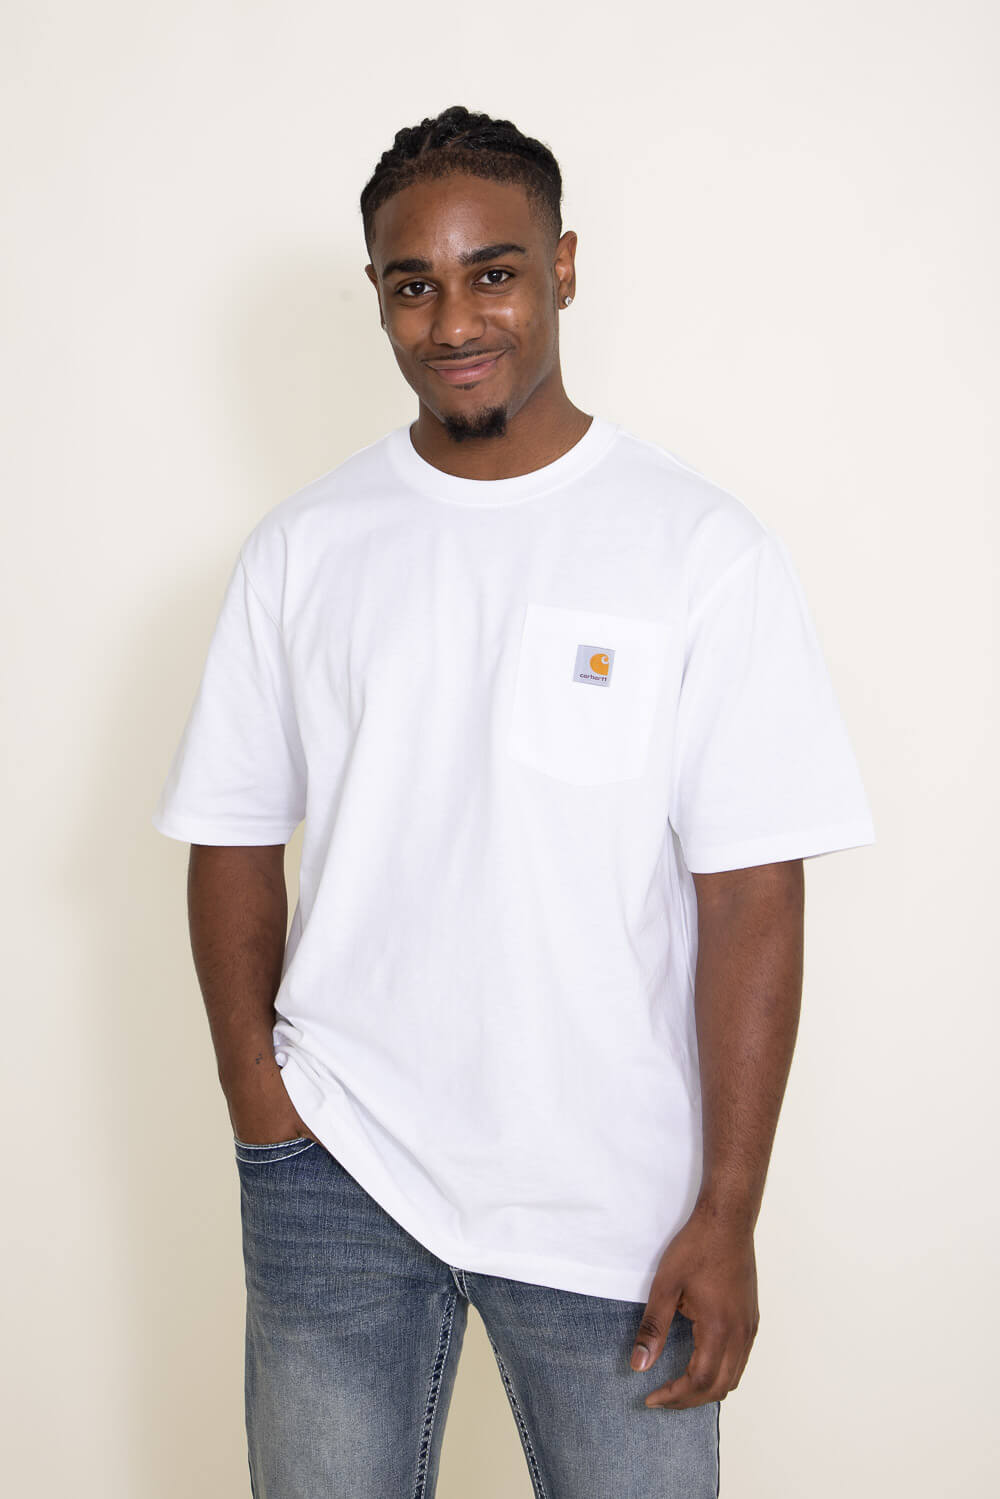 White Pocket T-Shirt For Men